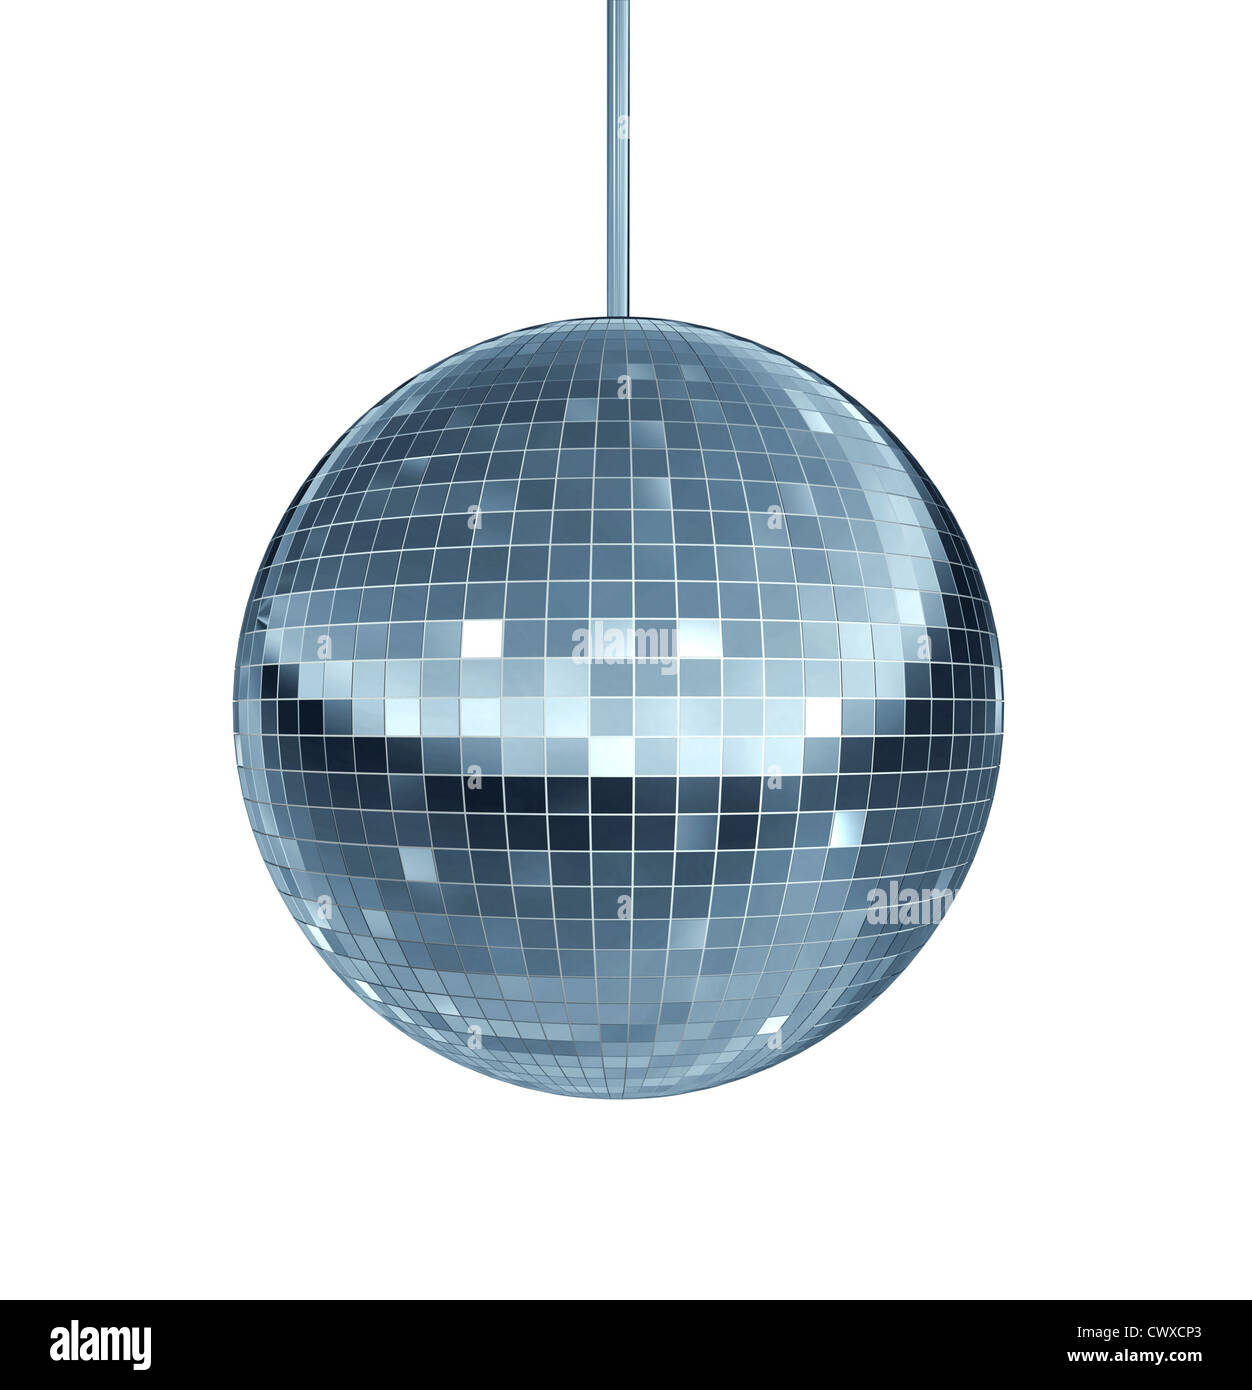 Disco-Kugel als Spiegel Ball Symbol für Spaß und Tanz party in einem  Nachtclub oder locker und genießen Sie die Nut Beat der coole Musik tanzen  Club feiern zu lassen Stockfotografie - Alamy